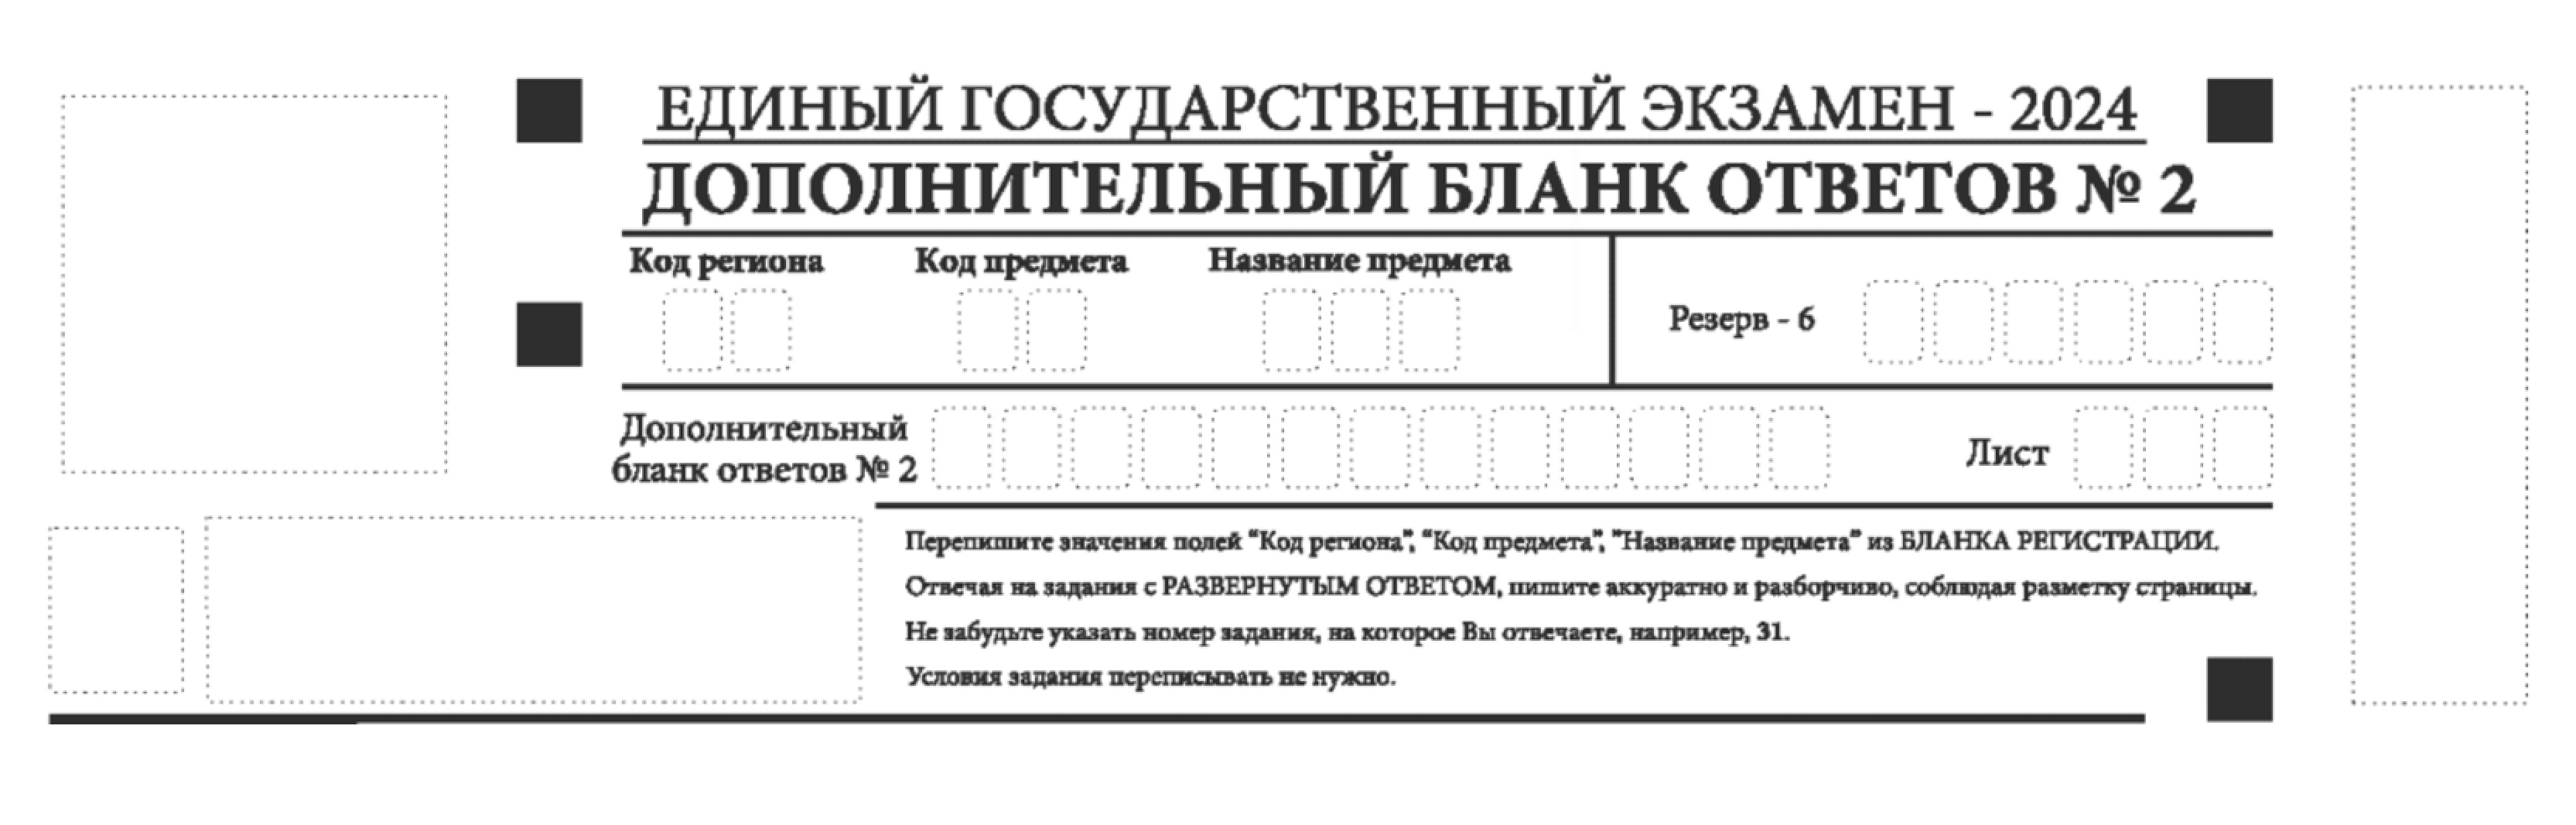 Участник может просить неограниченное количество дополнительных бланков, если уже заполнил выданные. Например, несколько бланков могут потребоваться на экзамене по русскому. Источник: obrnadzor.gov.ru